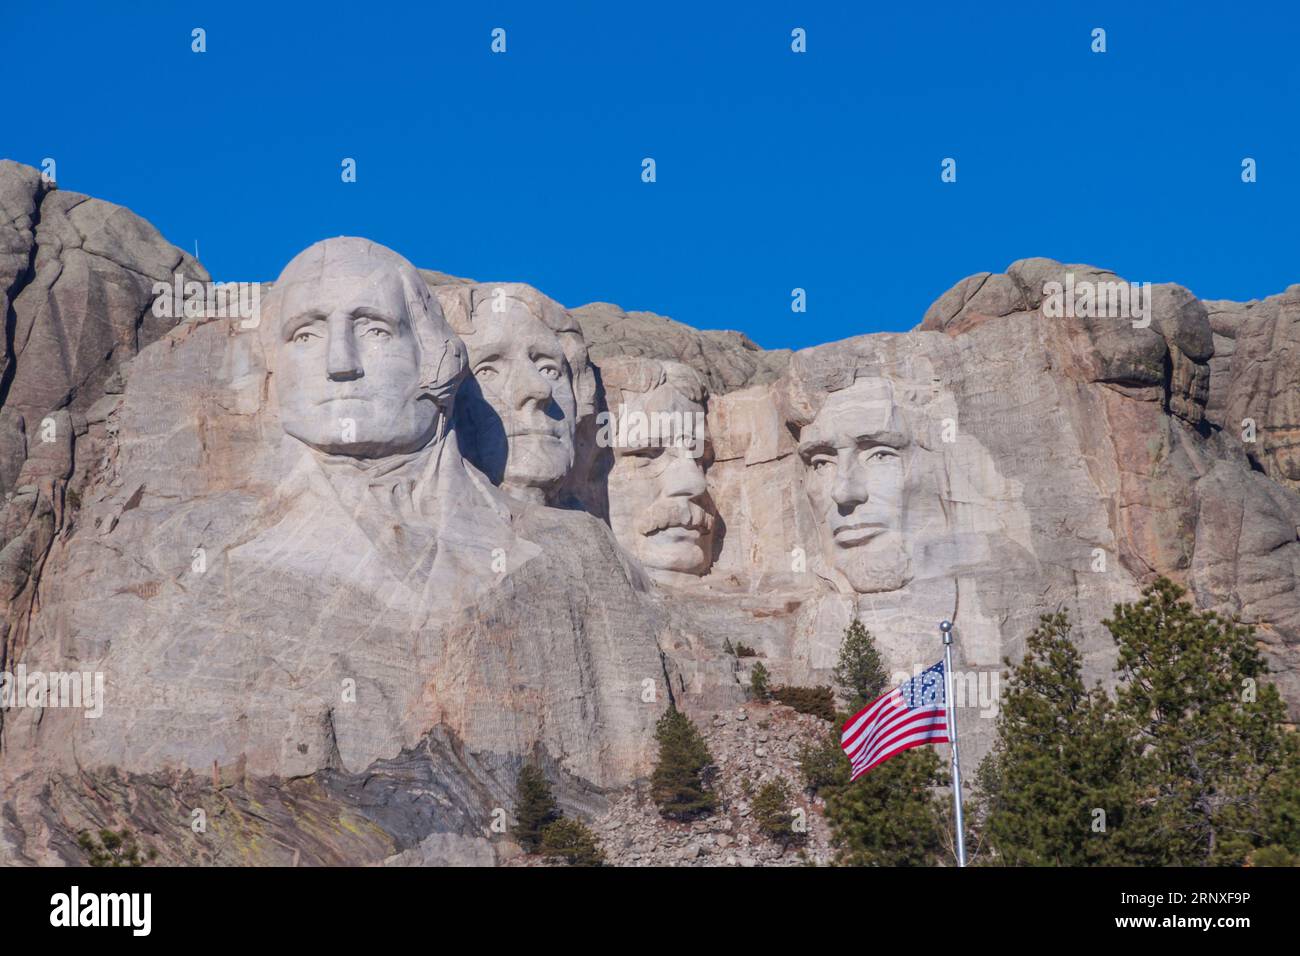 Mount Rushmore National Memorial nel South Dakota, un famoso simbolo patriottico sin dal suo completamento nel 1941. Sculture di presidenti scolpite in granito. Foto Stock